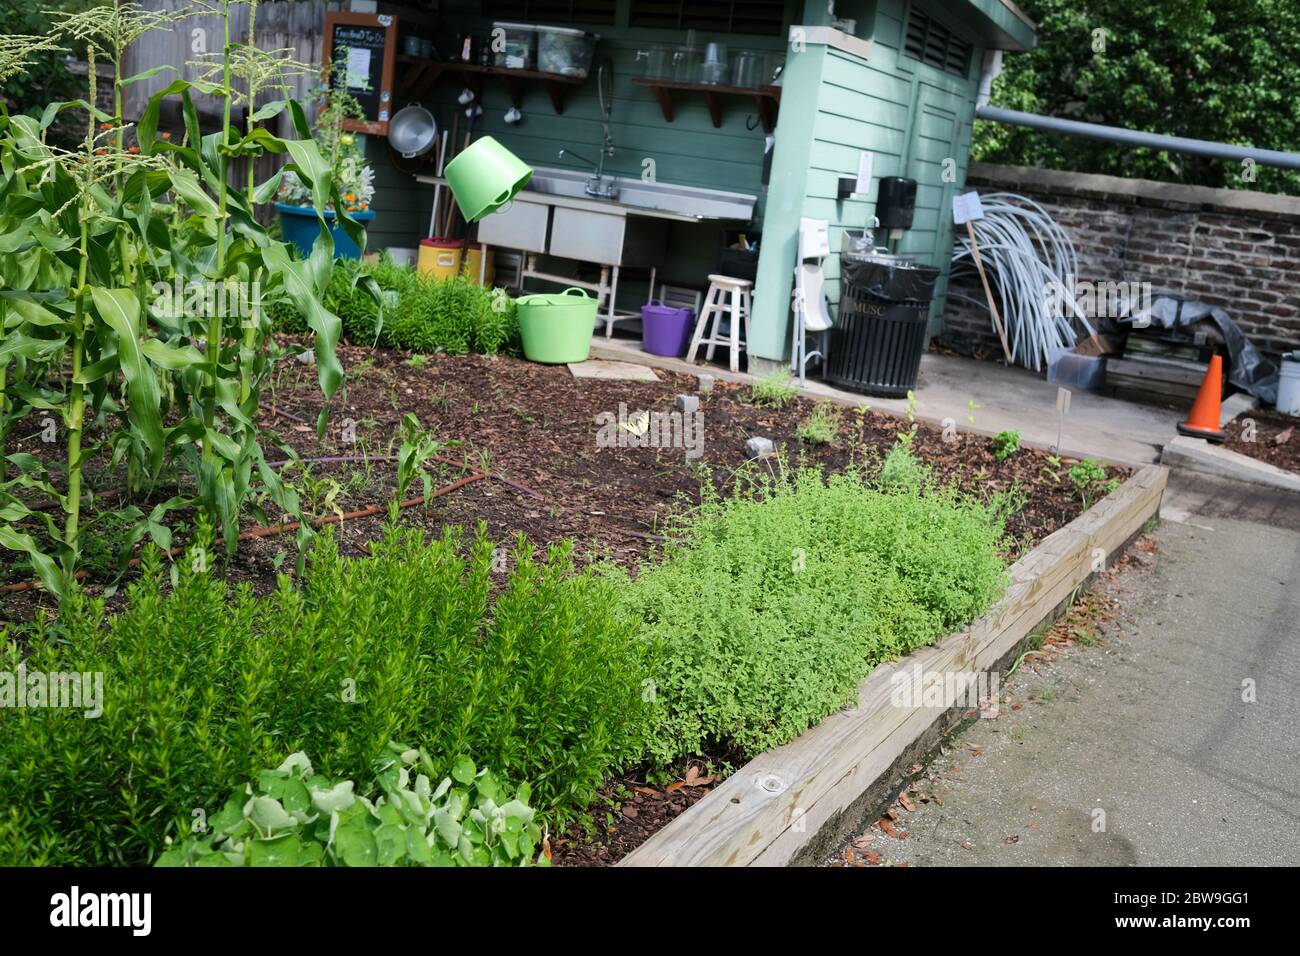 Giardini urbani con piante, girasoli, prodotti, pomodori, broccoli, e prodotti popolari che crescono a frutto per gli individui che lavorano per farlo crescere. Foto Stock